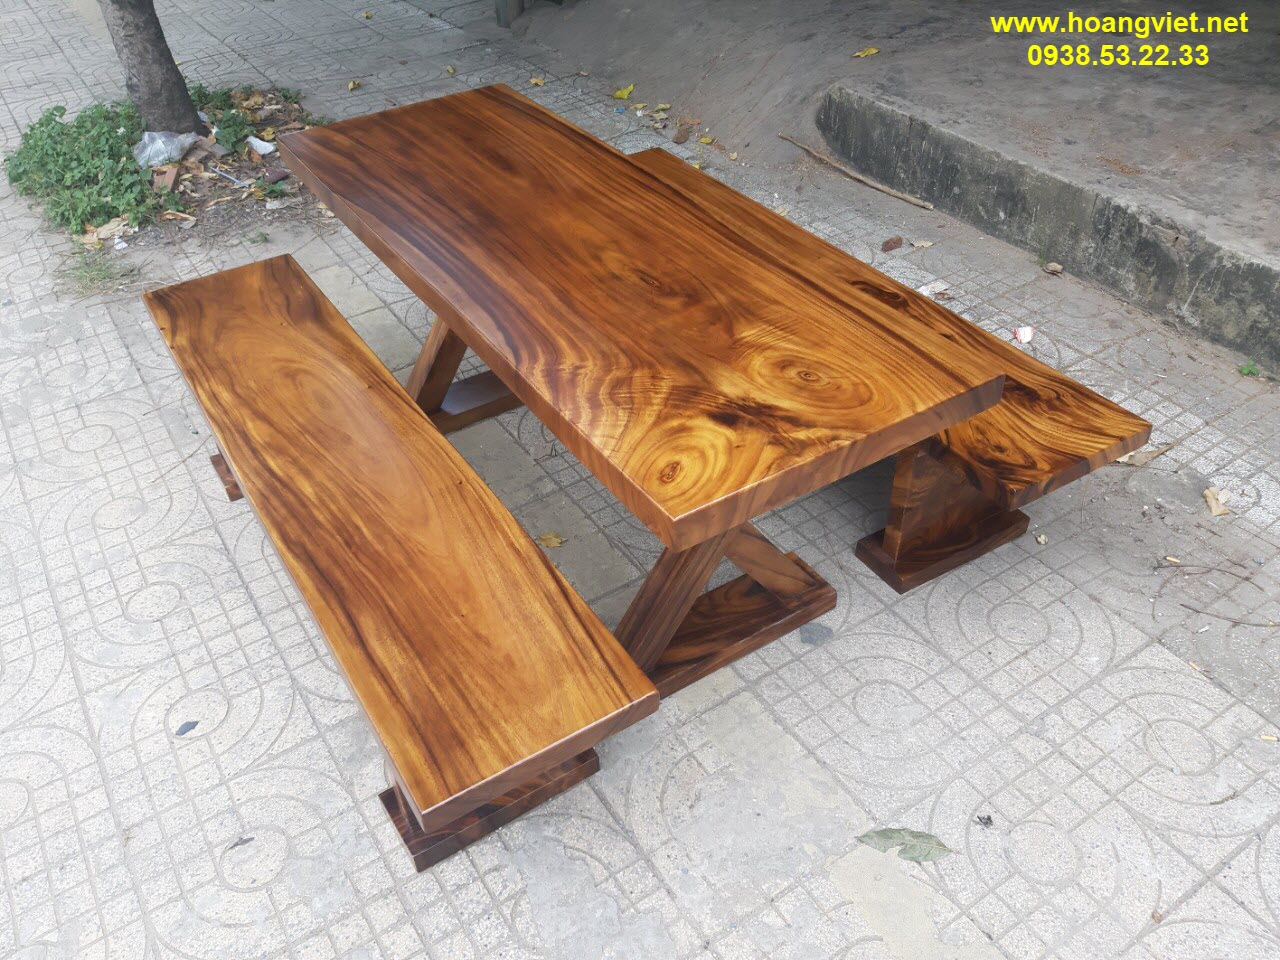 Những bộ bàn k3 gỗ nguyên khối đẹp nhất thị trường.